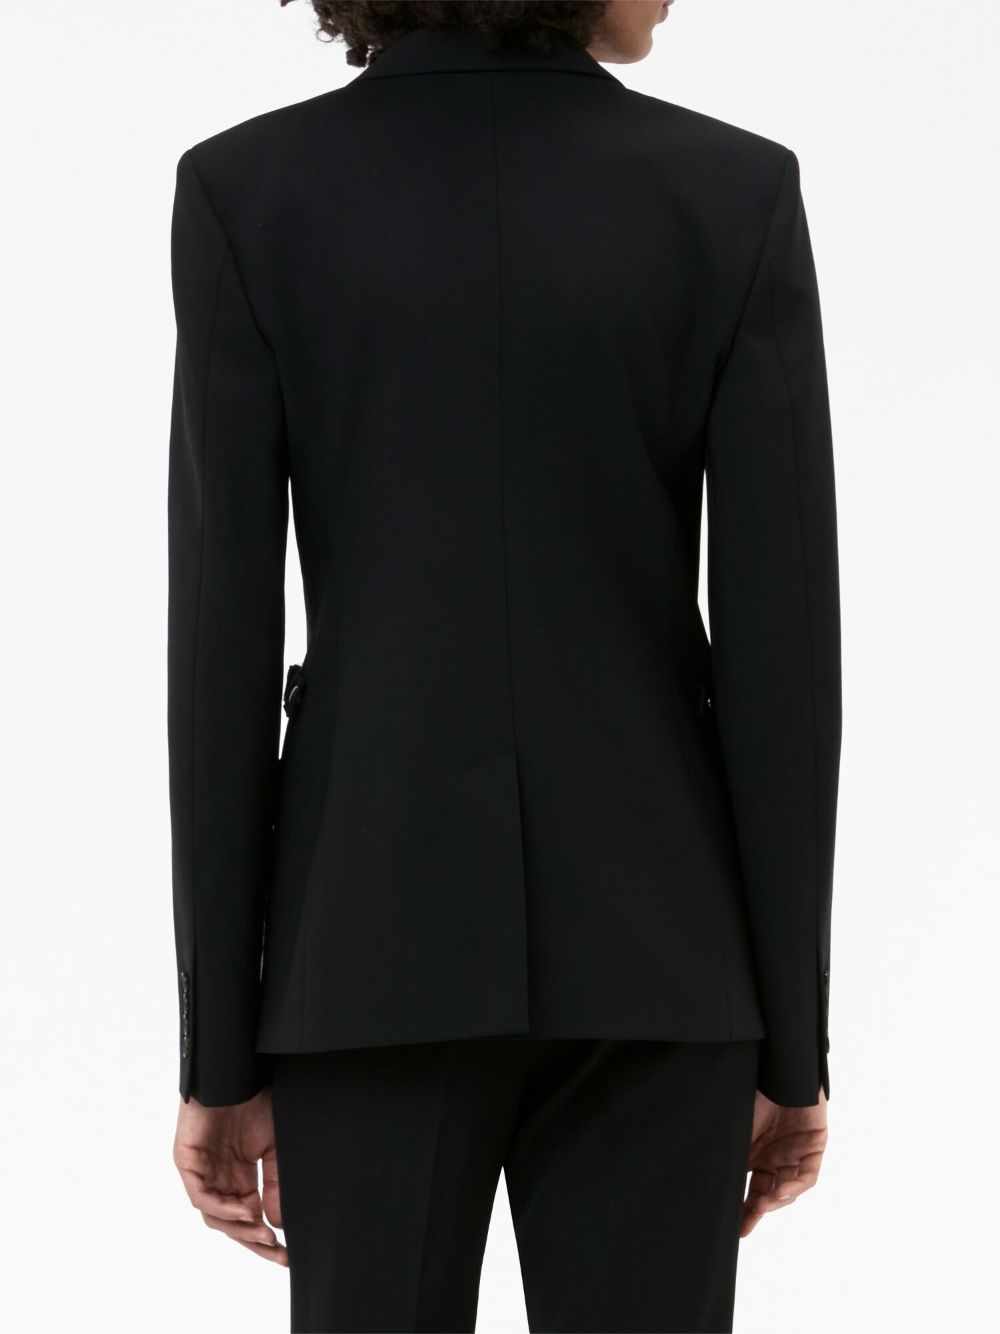 Áo khoác đen bó sát dành cho phái nữ - mùa FW23